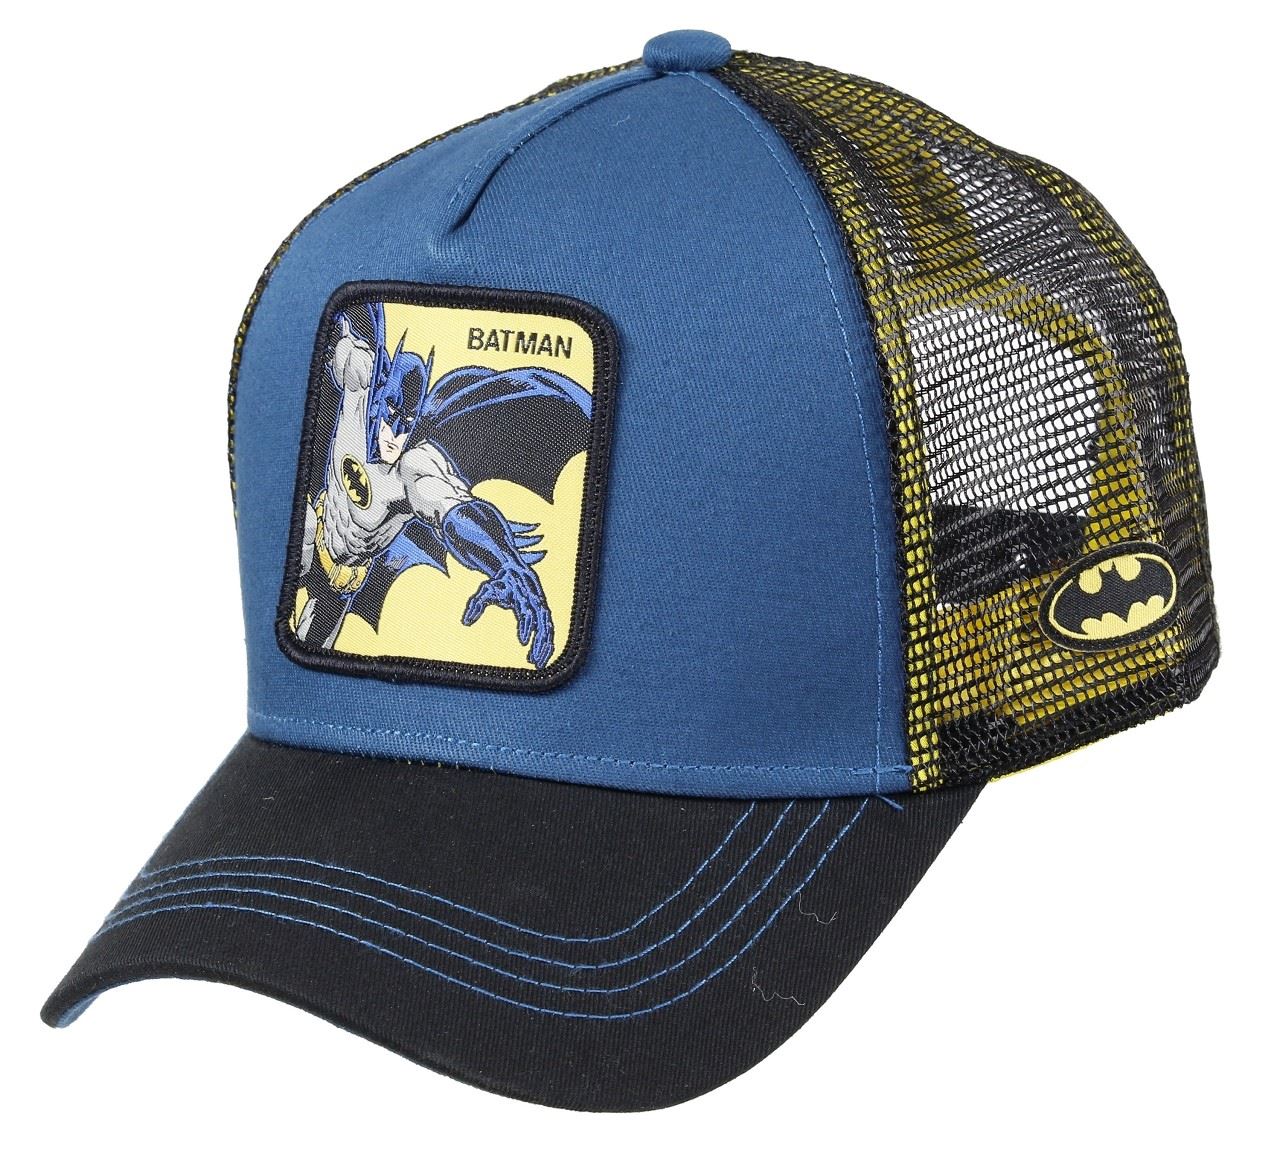 Batman Trucker Cap Capslab